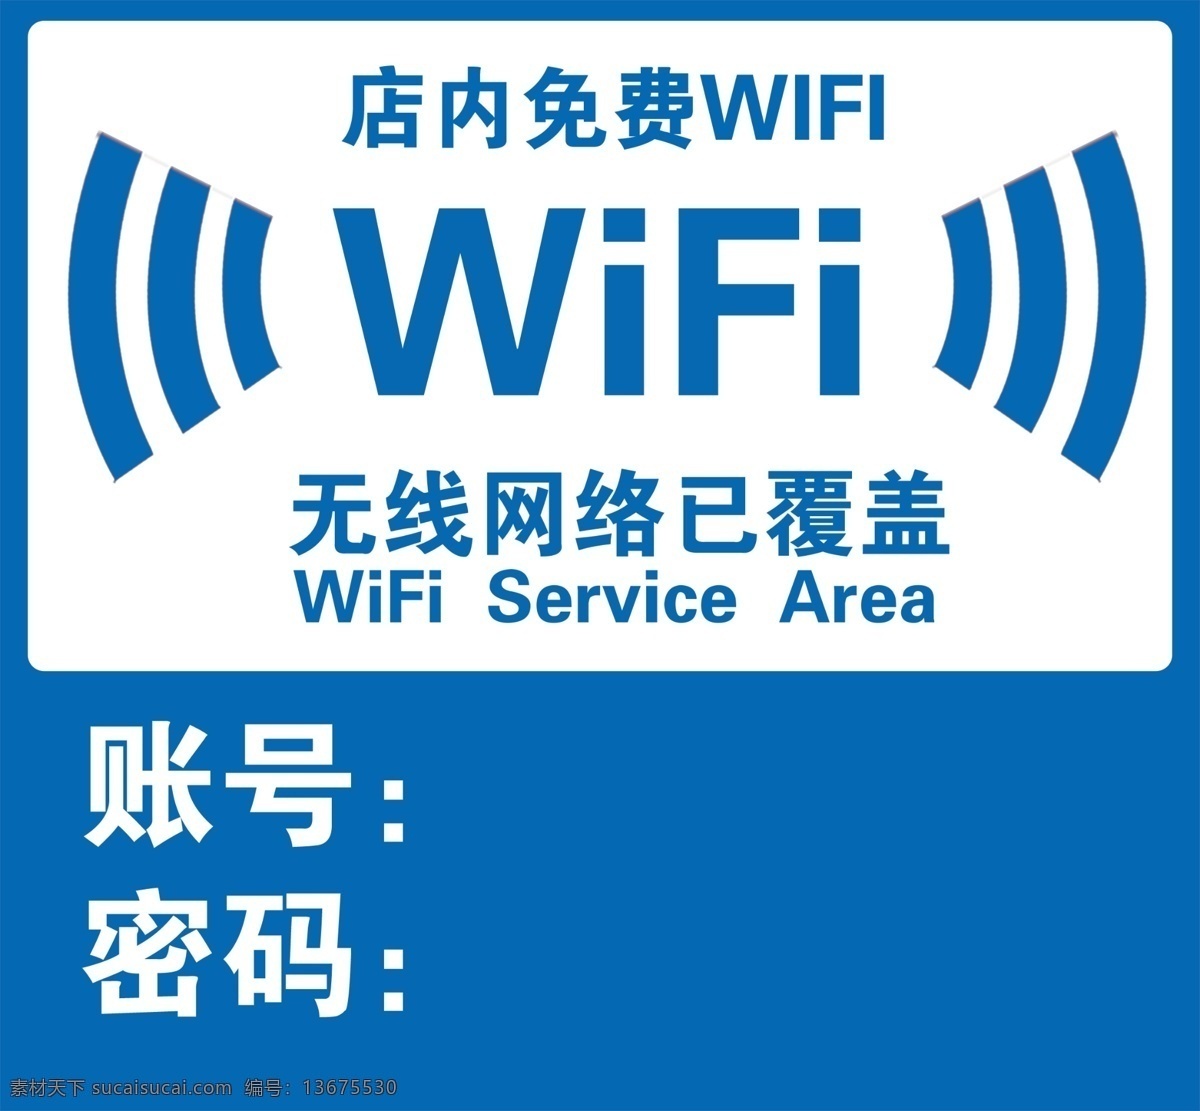 免费wifi 免费 wifi 无线网 店内wifi 账号 密码 无线网络 分层